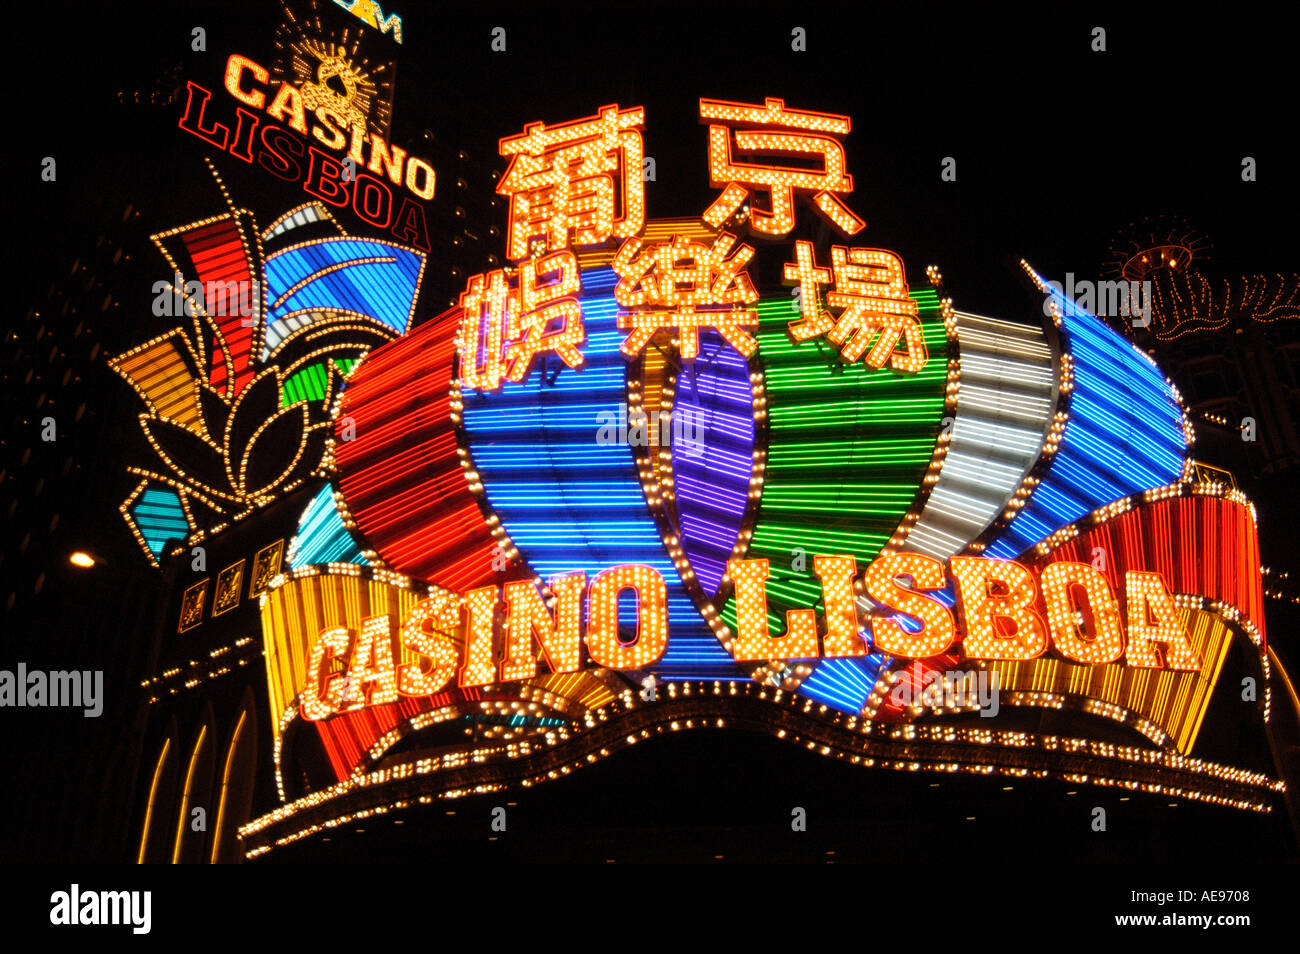 Casino au Lisboa Hotel Macau en Chine Banque D'Images